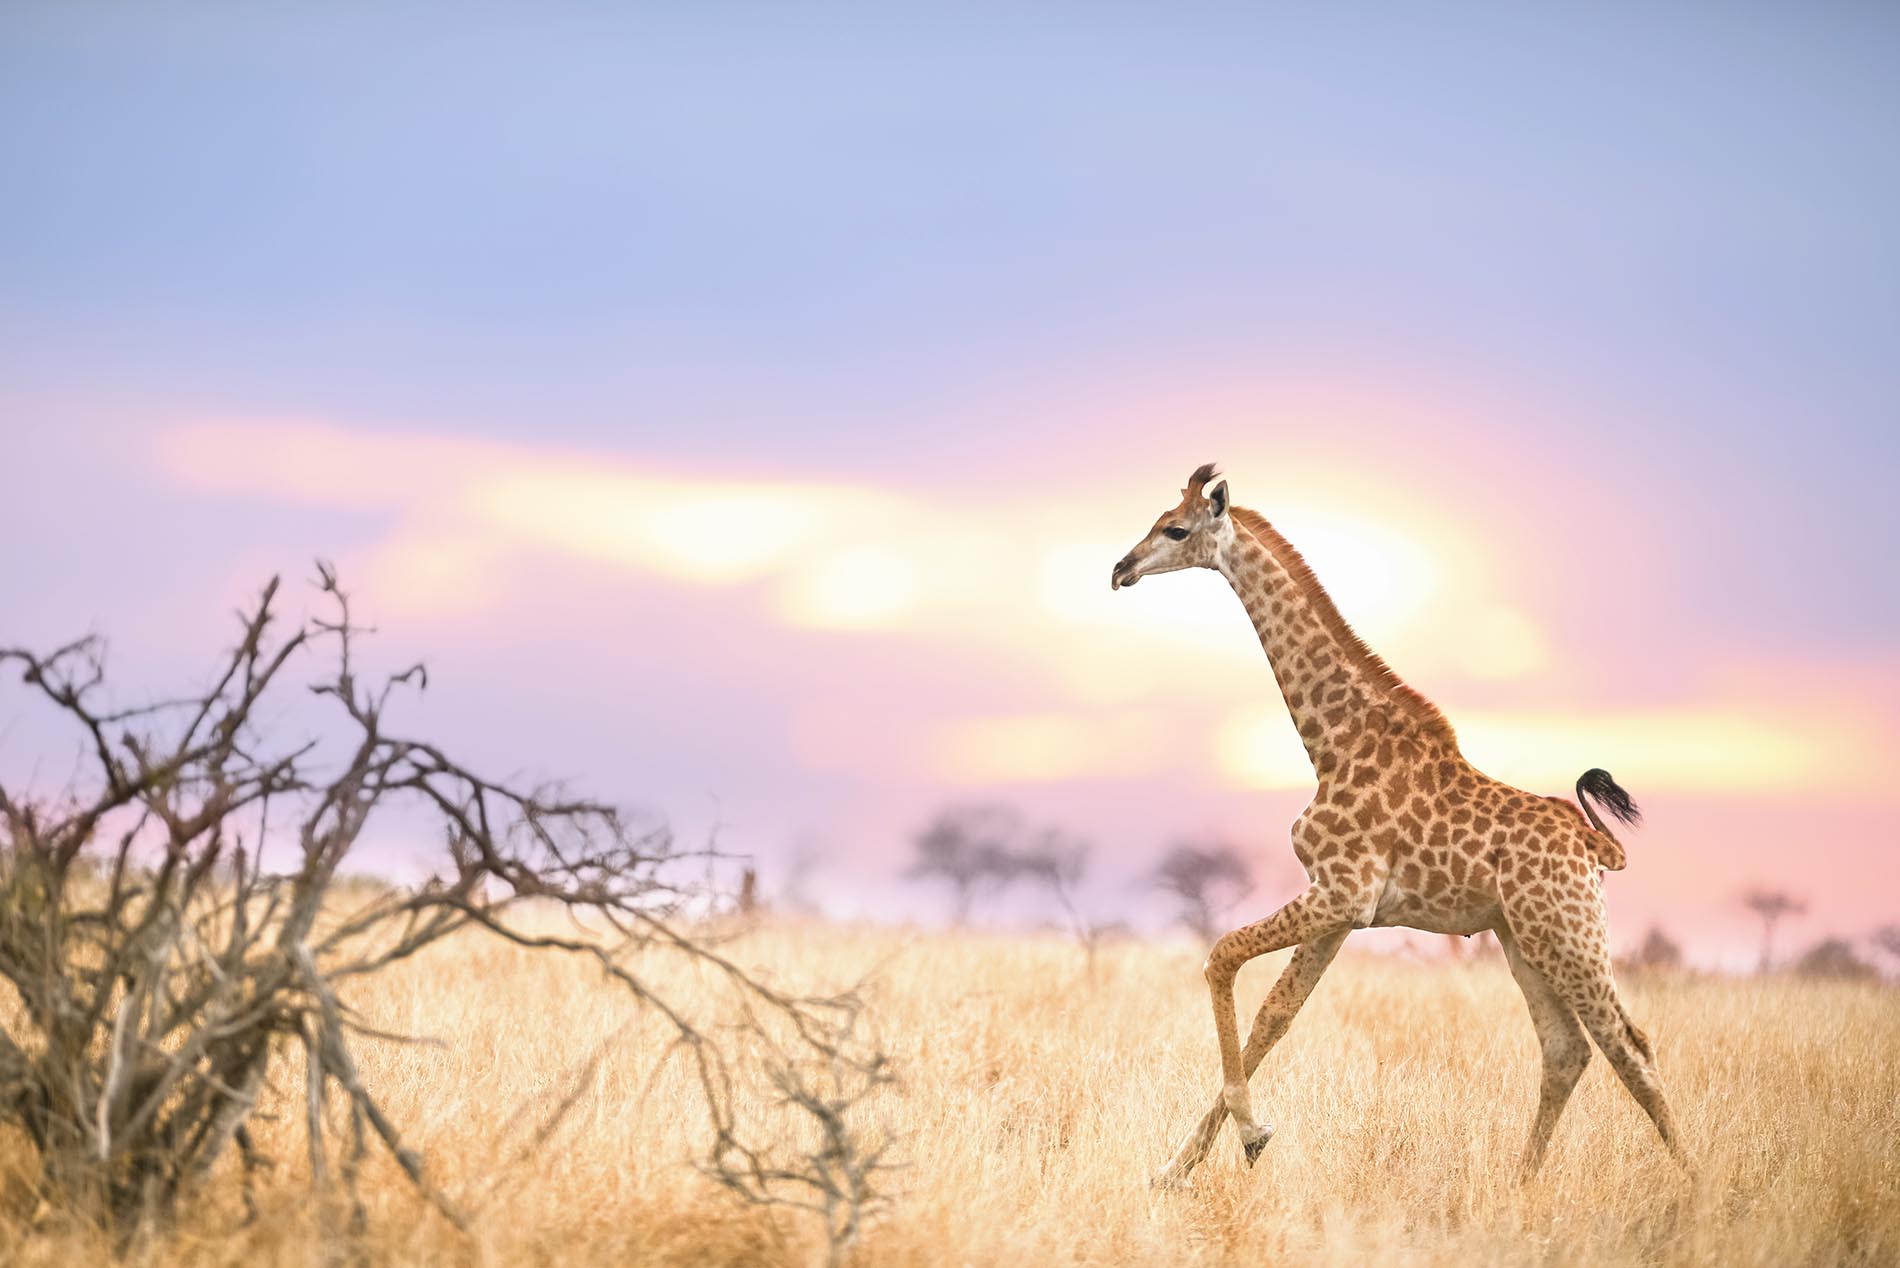 Giraffe on the run